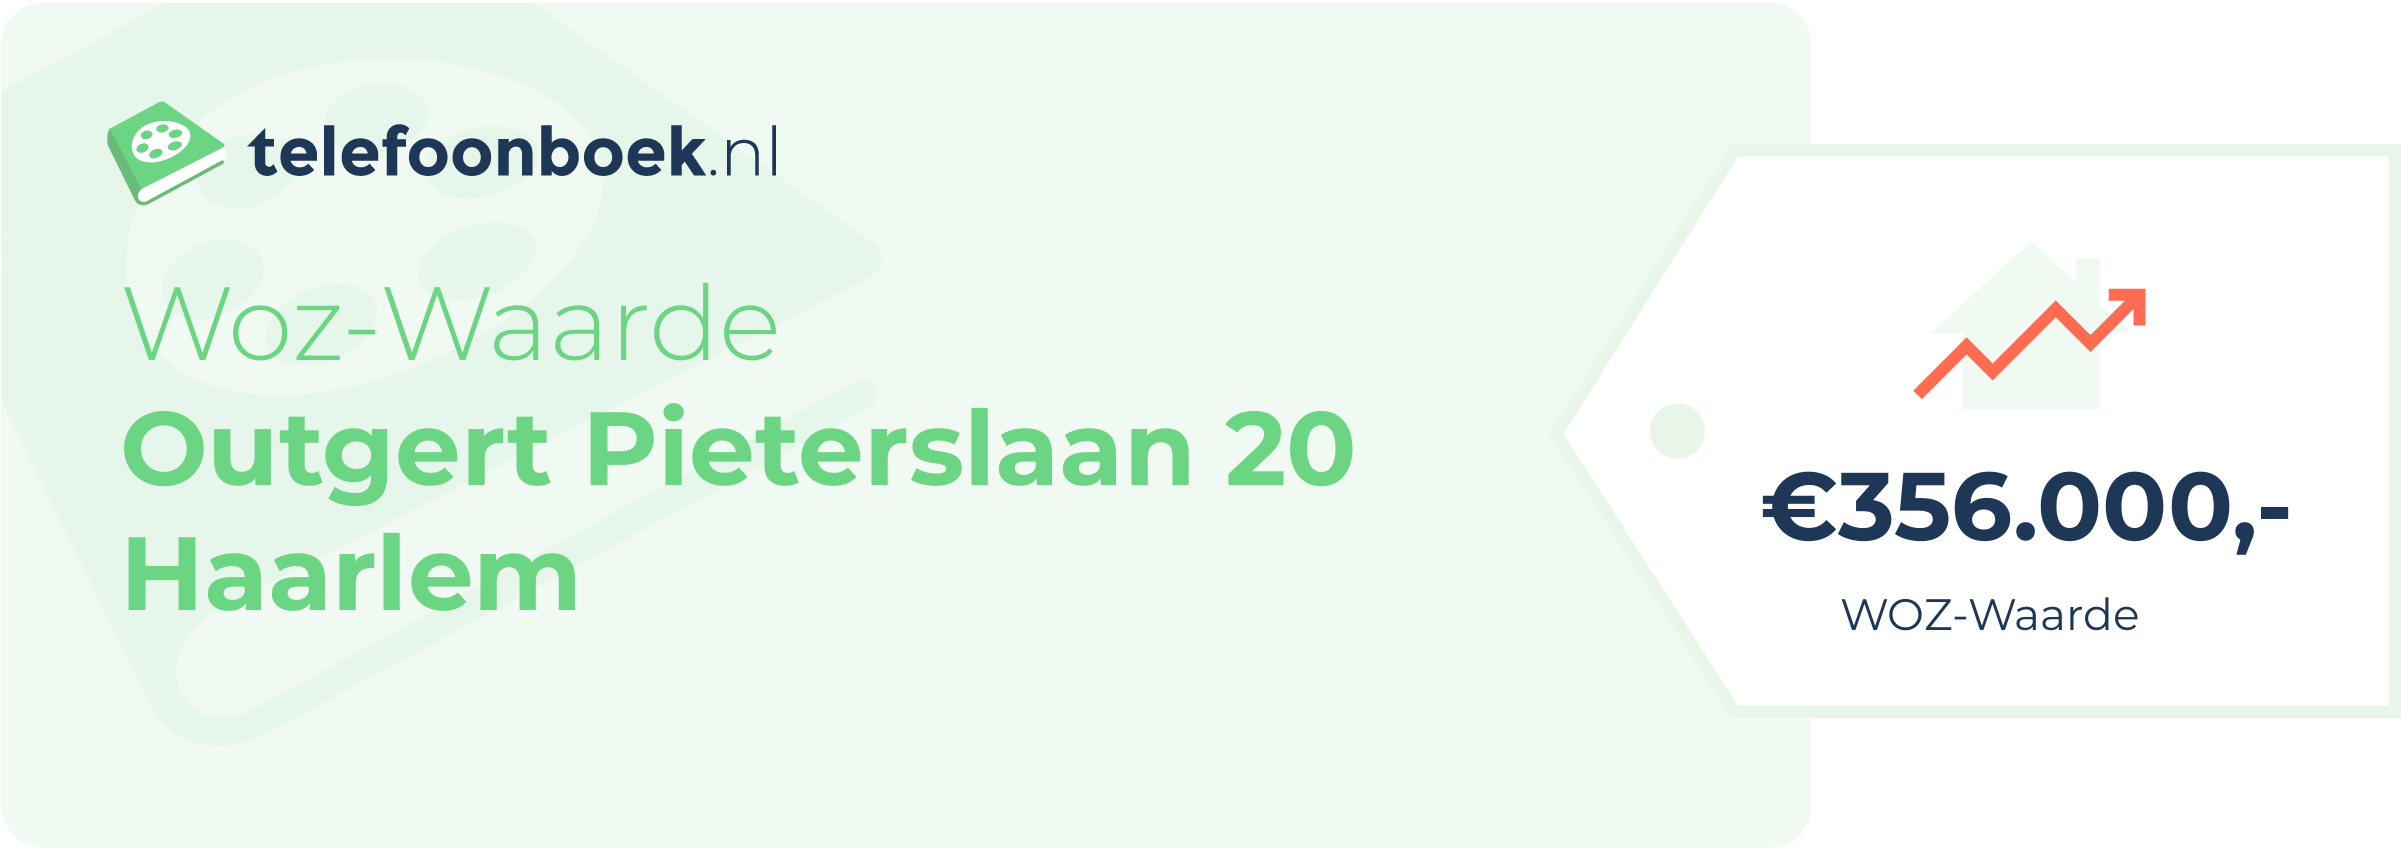 WOZ-waarde Outgert Pieterslaan 20 Haarlem